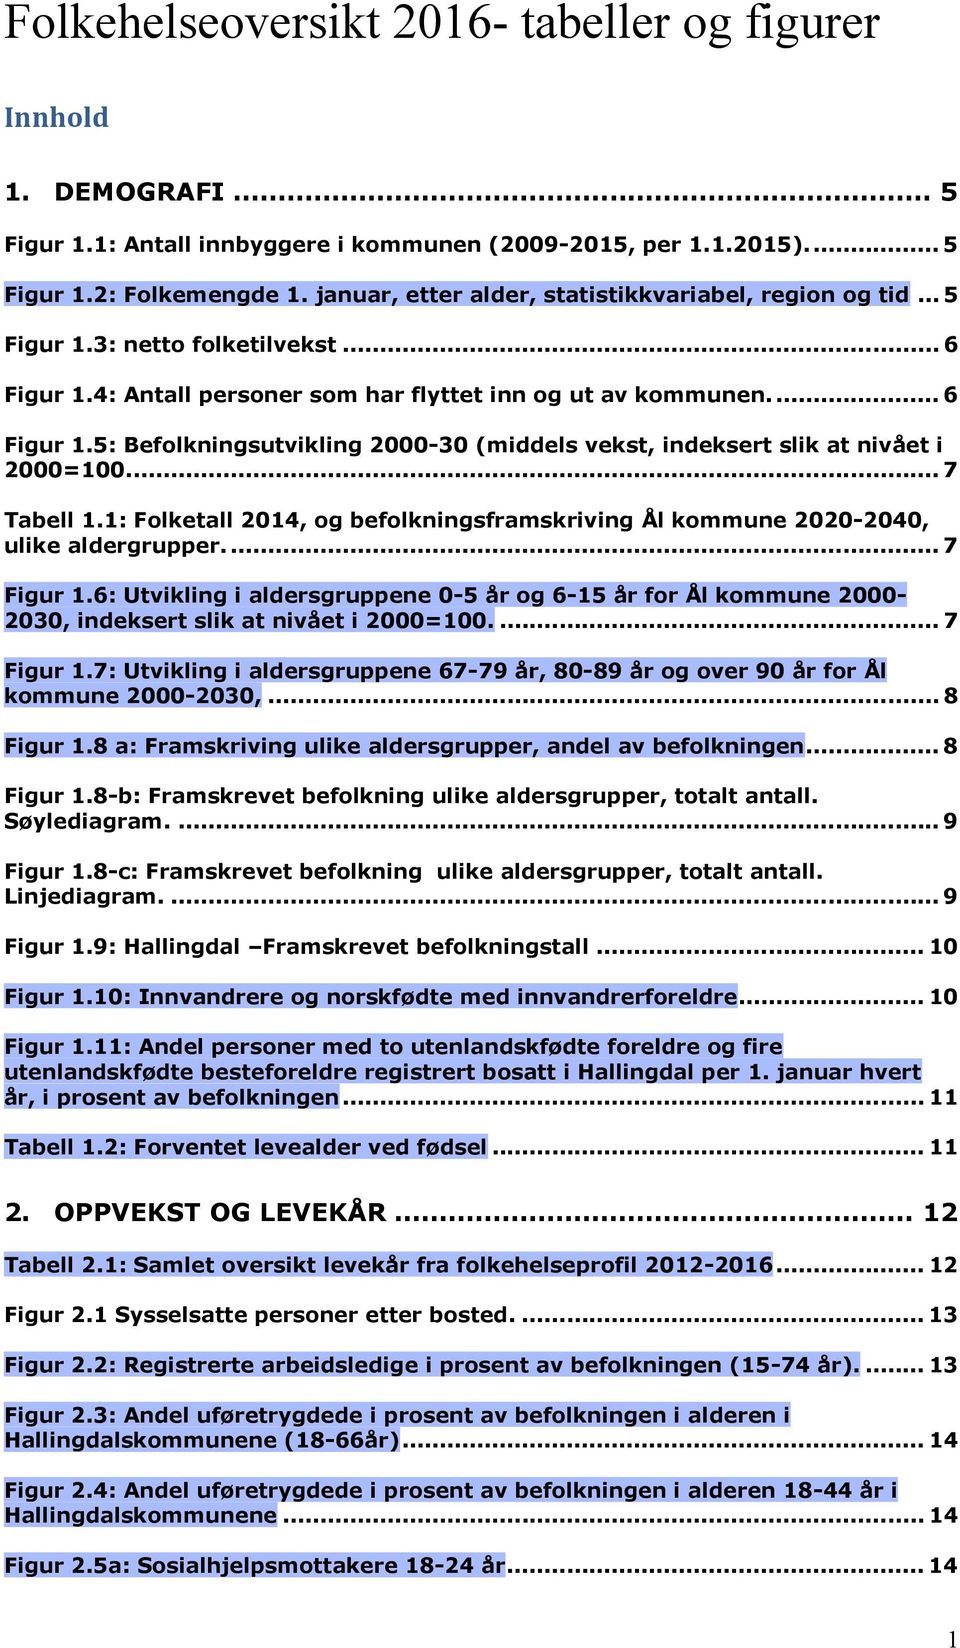 ... 7 Tabell 1.1: Folketall 2014, og befolkningsframskriving Ål kommune 2020-2040, ulike aldergrupper.... 7 Figur 1.